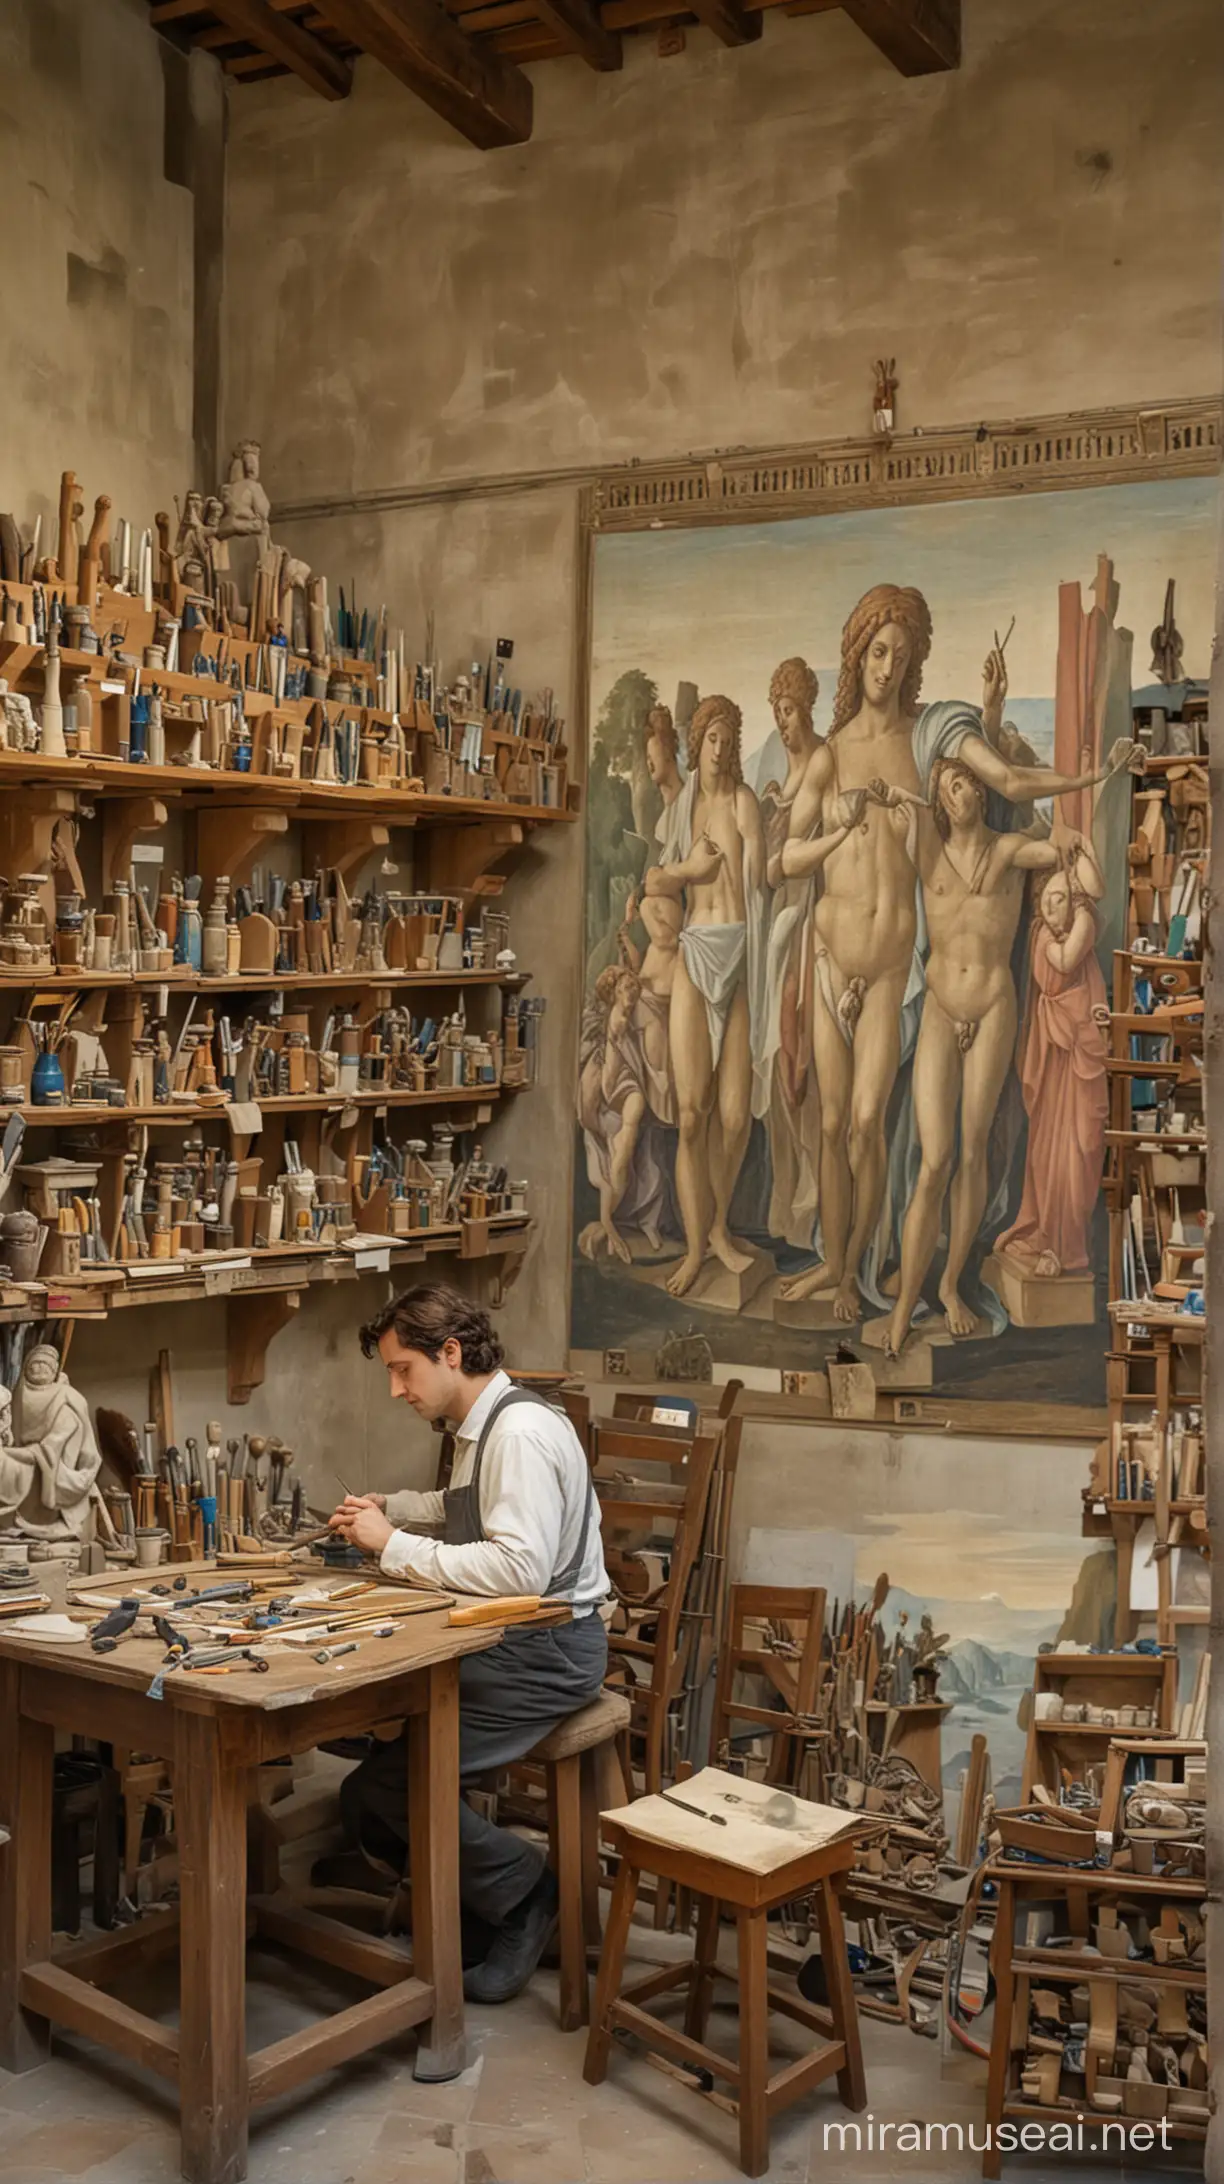 Da Vinci in Verrocchios Artistic Studio A Renaissance Masterpiece in Progress